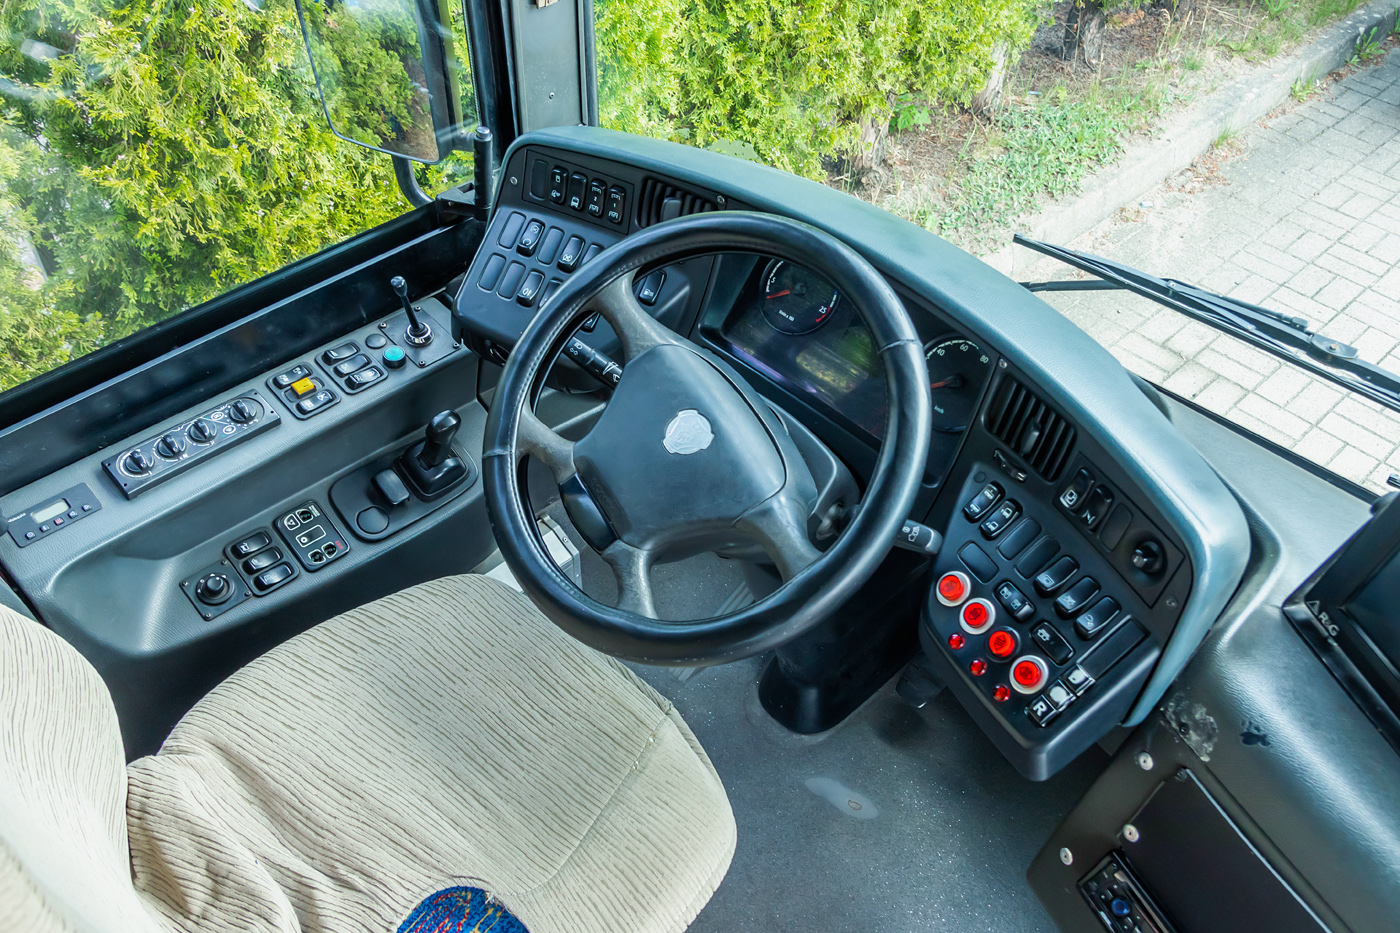 Scania CN280UB 4x2 EB #2065